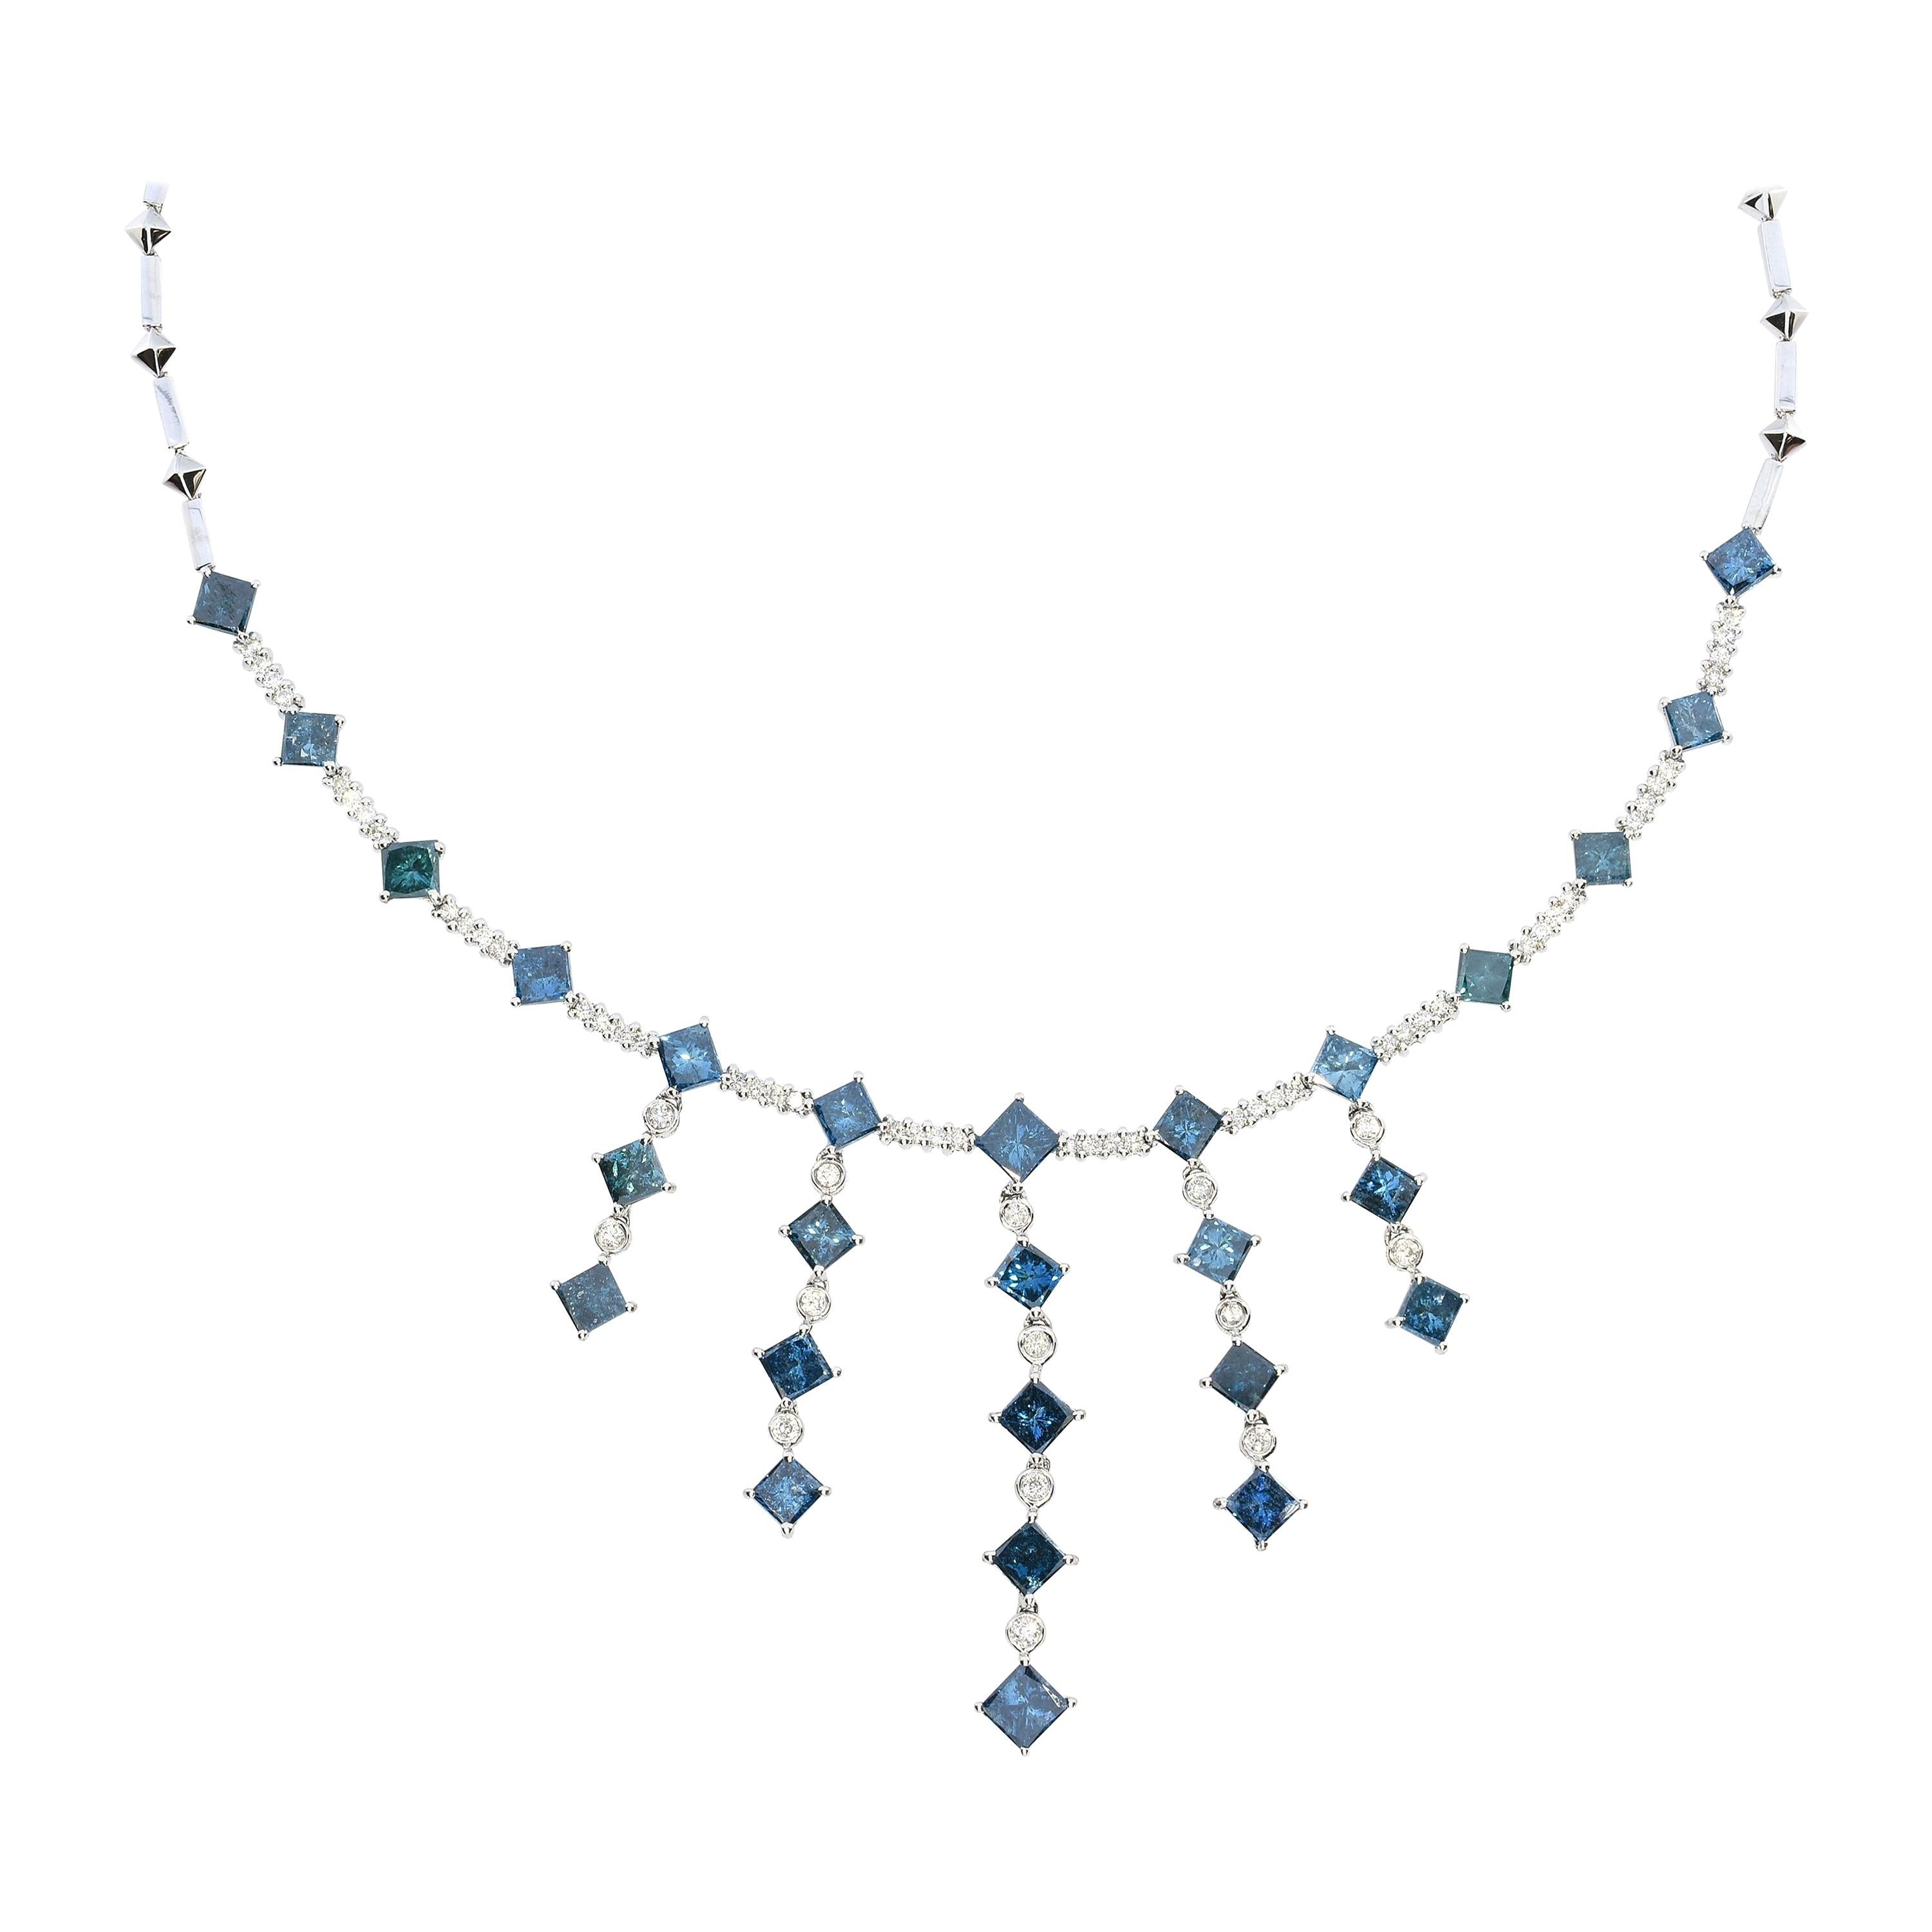 15.26 Carat White Diamond and (treated) Blue Diamond "Azul" Necklace